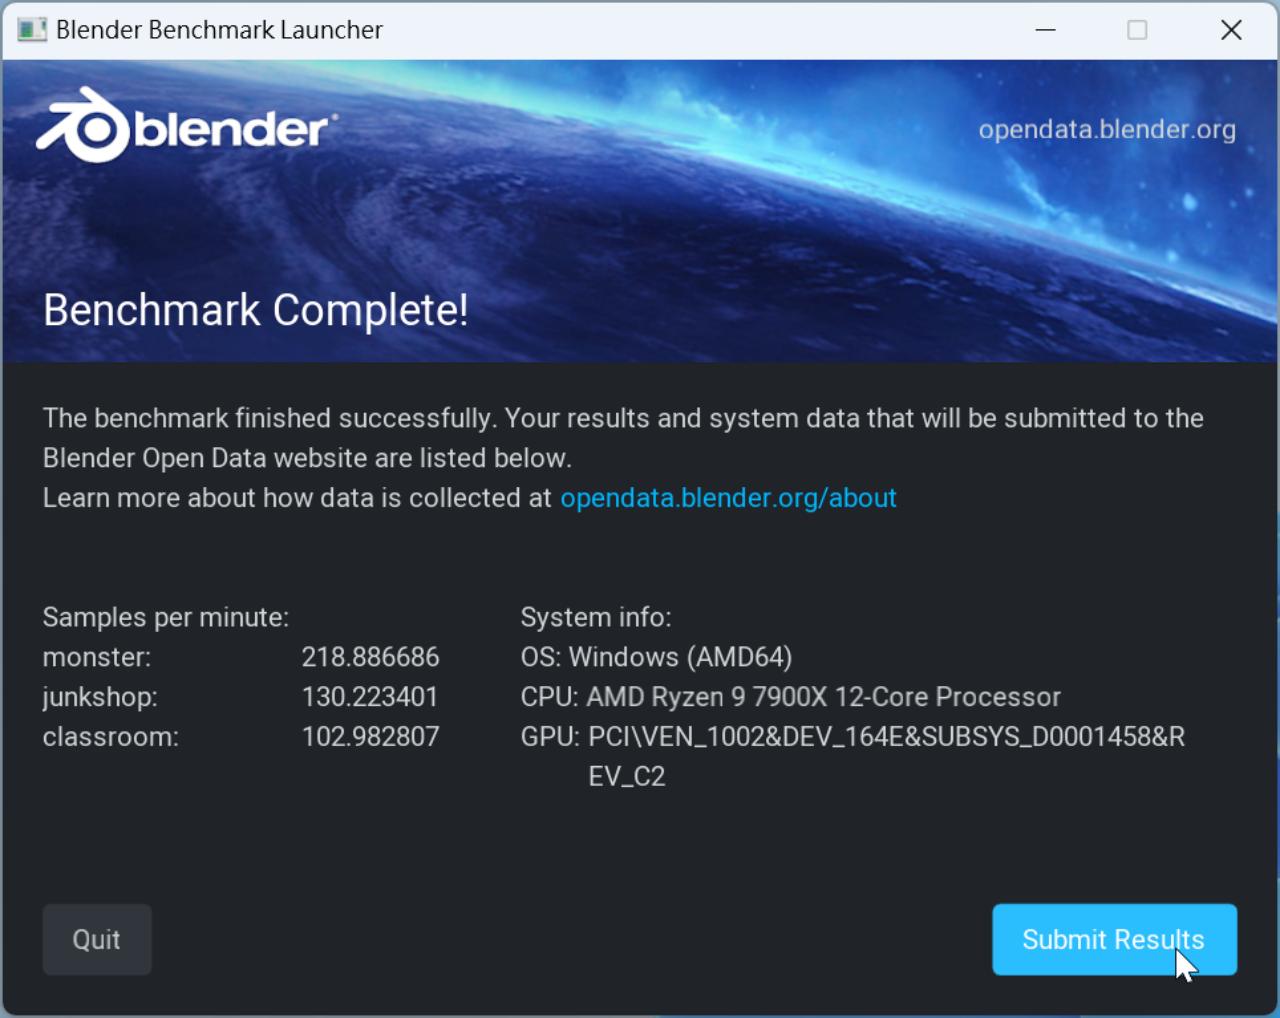 Blender 的測試，光靠 CPU 就能跑出不錯的成績。